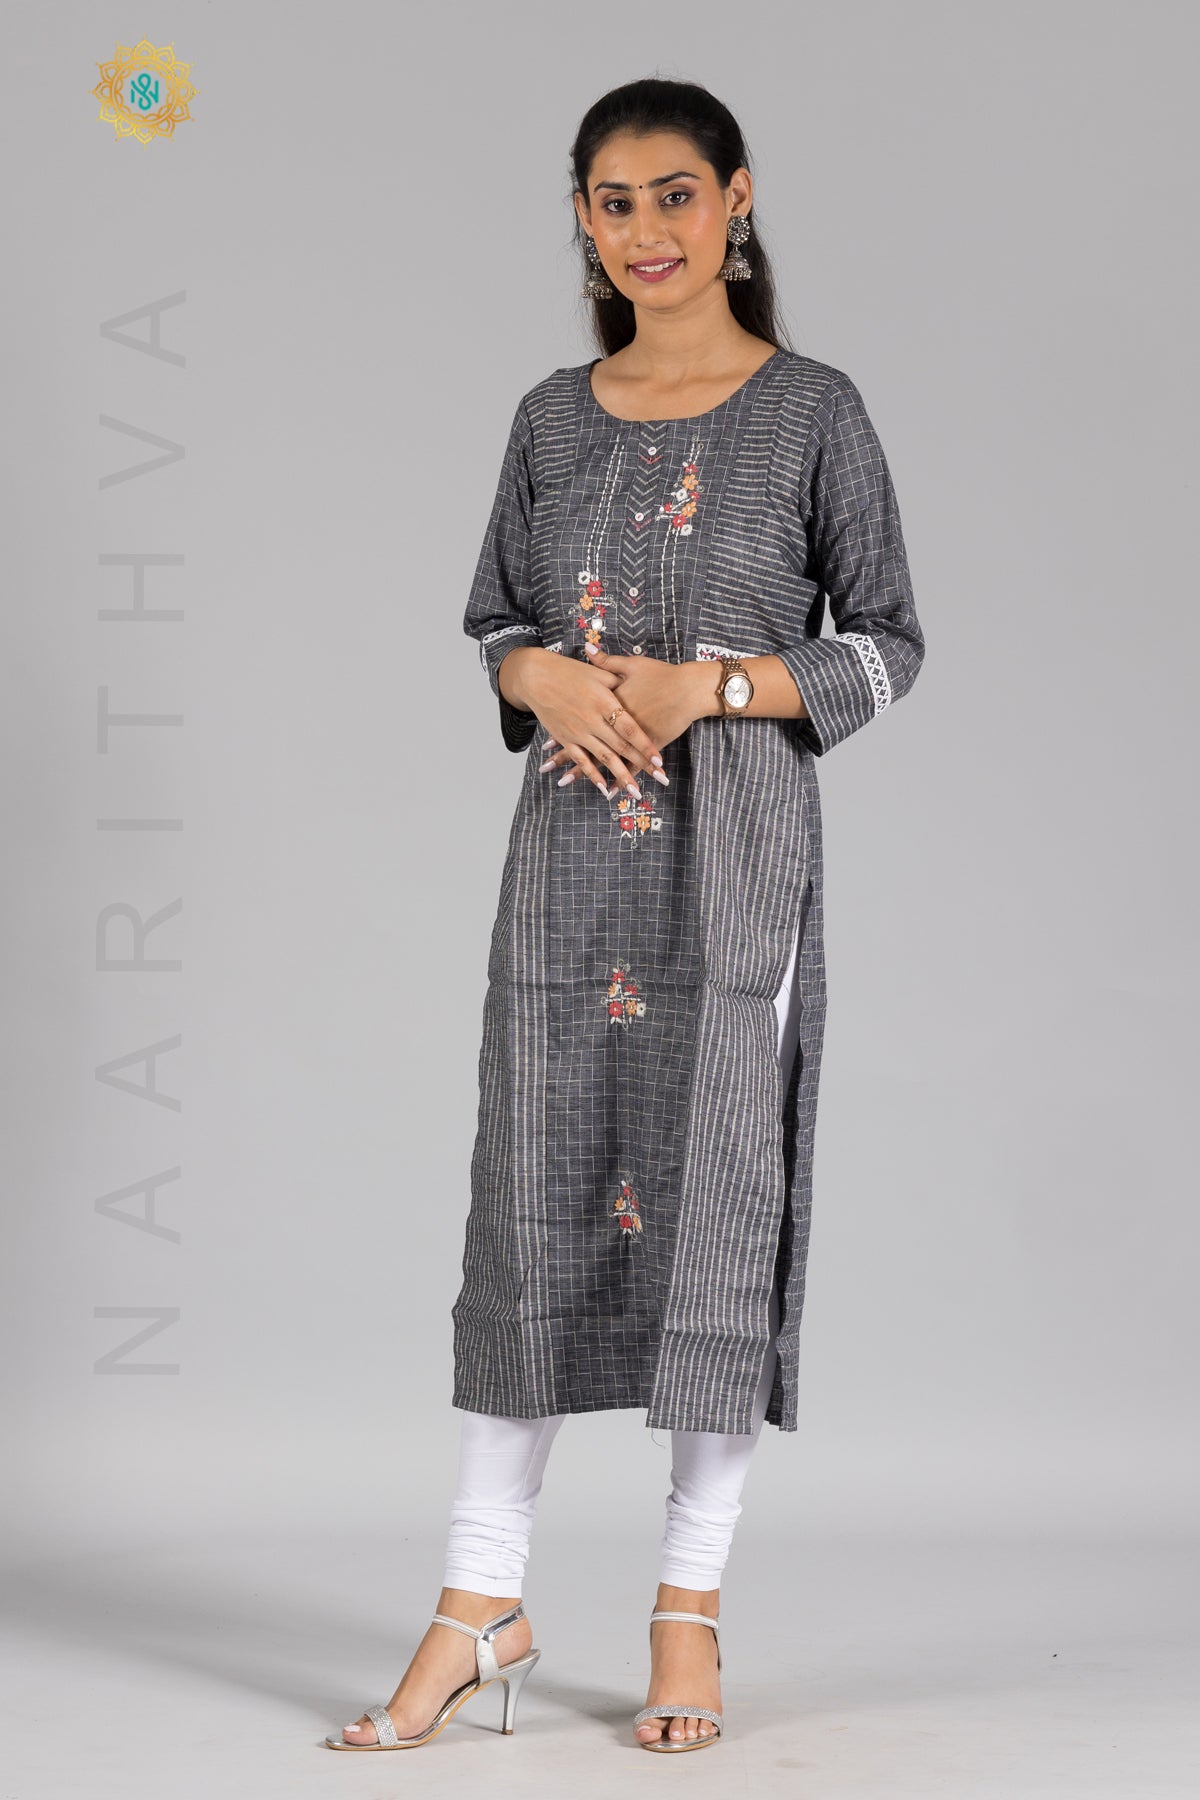 Fabulous Grey Color Cotton Designer Kurti With Jacket #a #line #kurti # designs #latest #cotton #al… | Long kurti designs, Designer kurti patterns,  Kurti with jacket